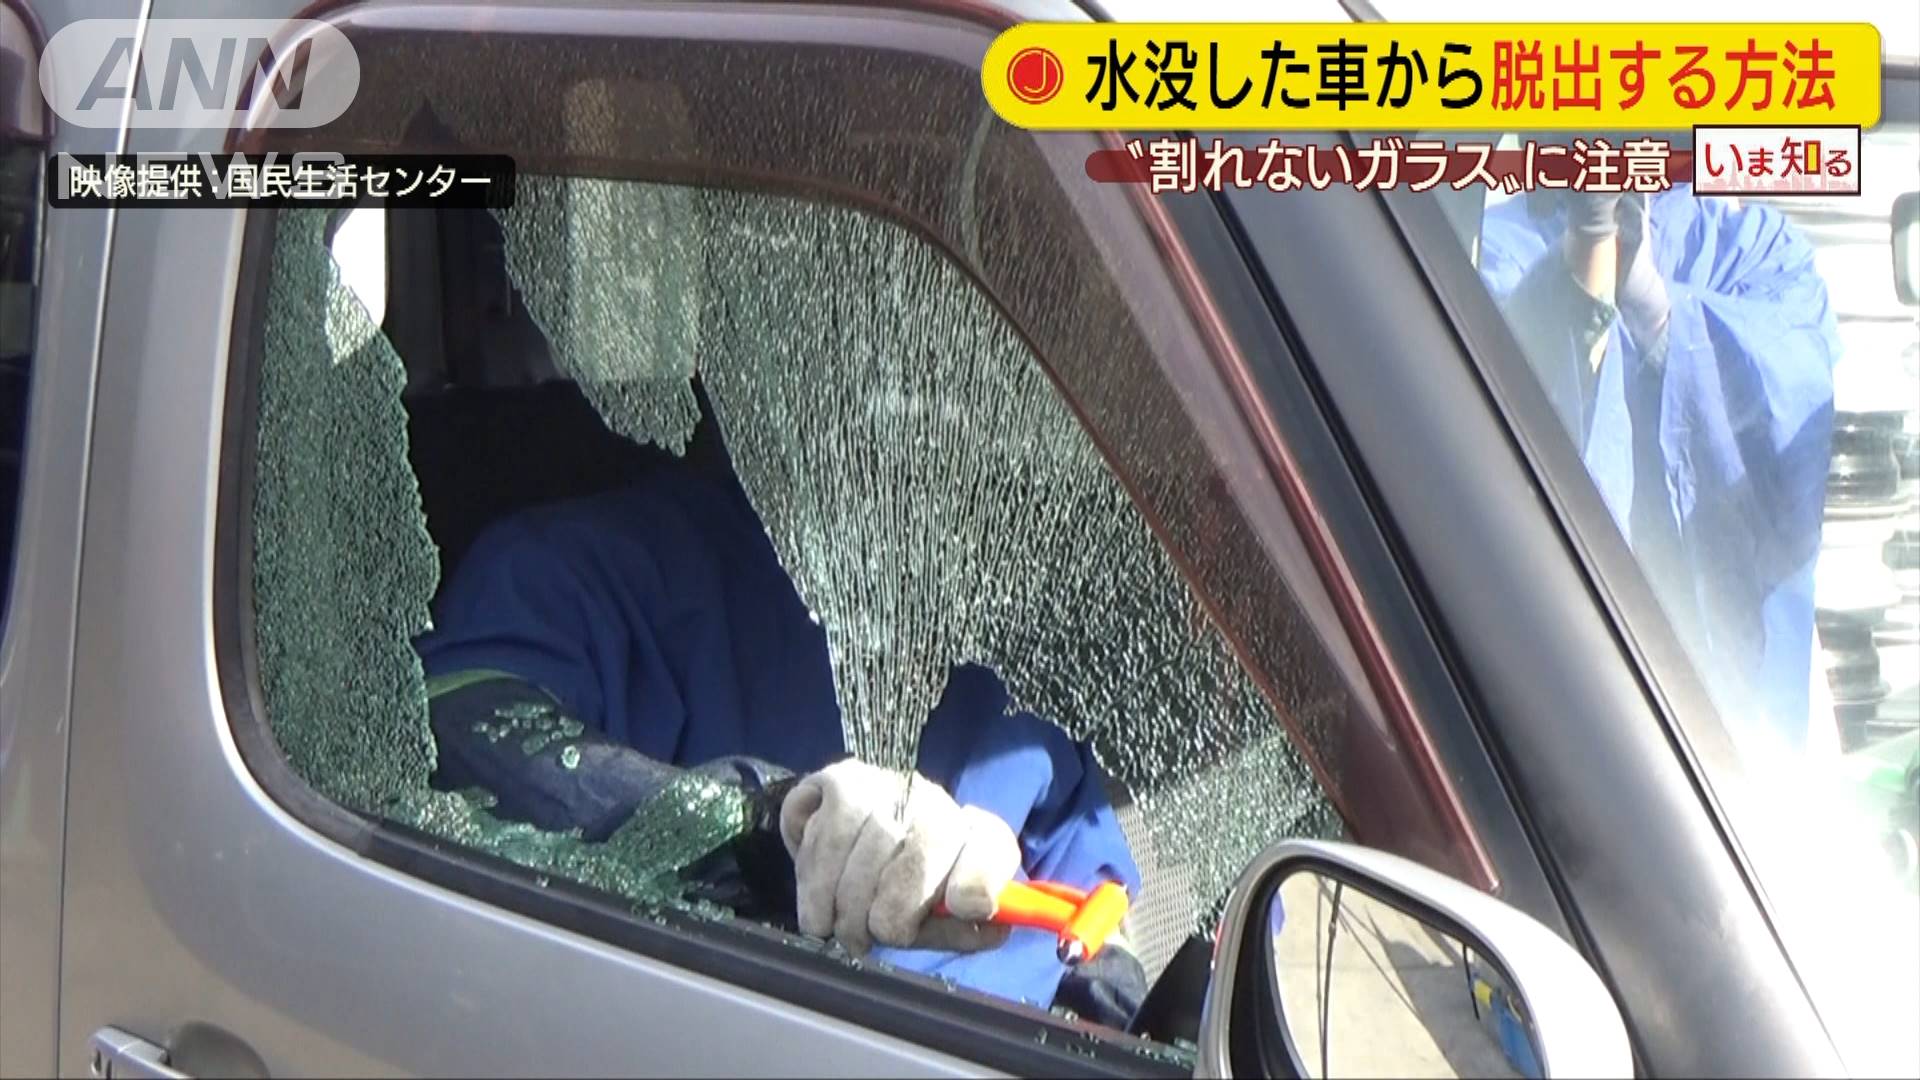 水没した車から 脱出の仕方 割れないガラスに注意 テレ朝news テレビ朝日のニュースサイト